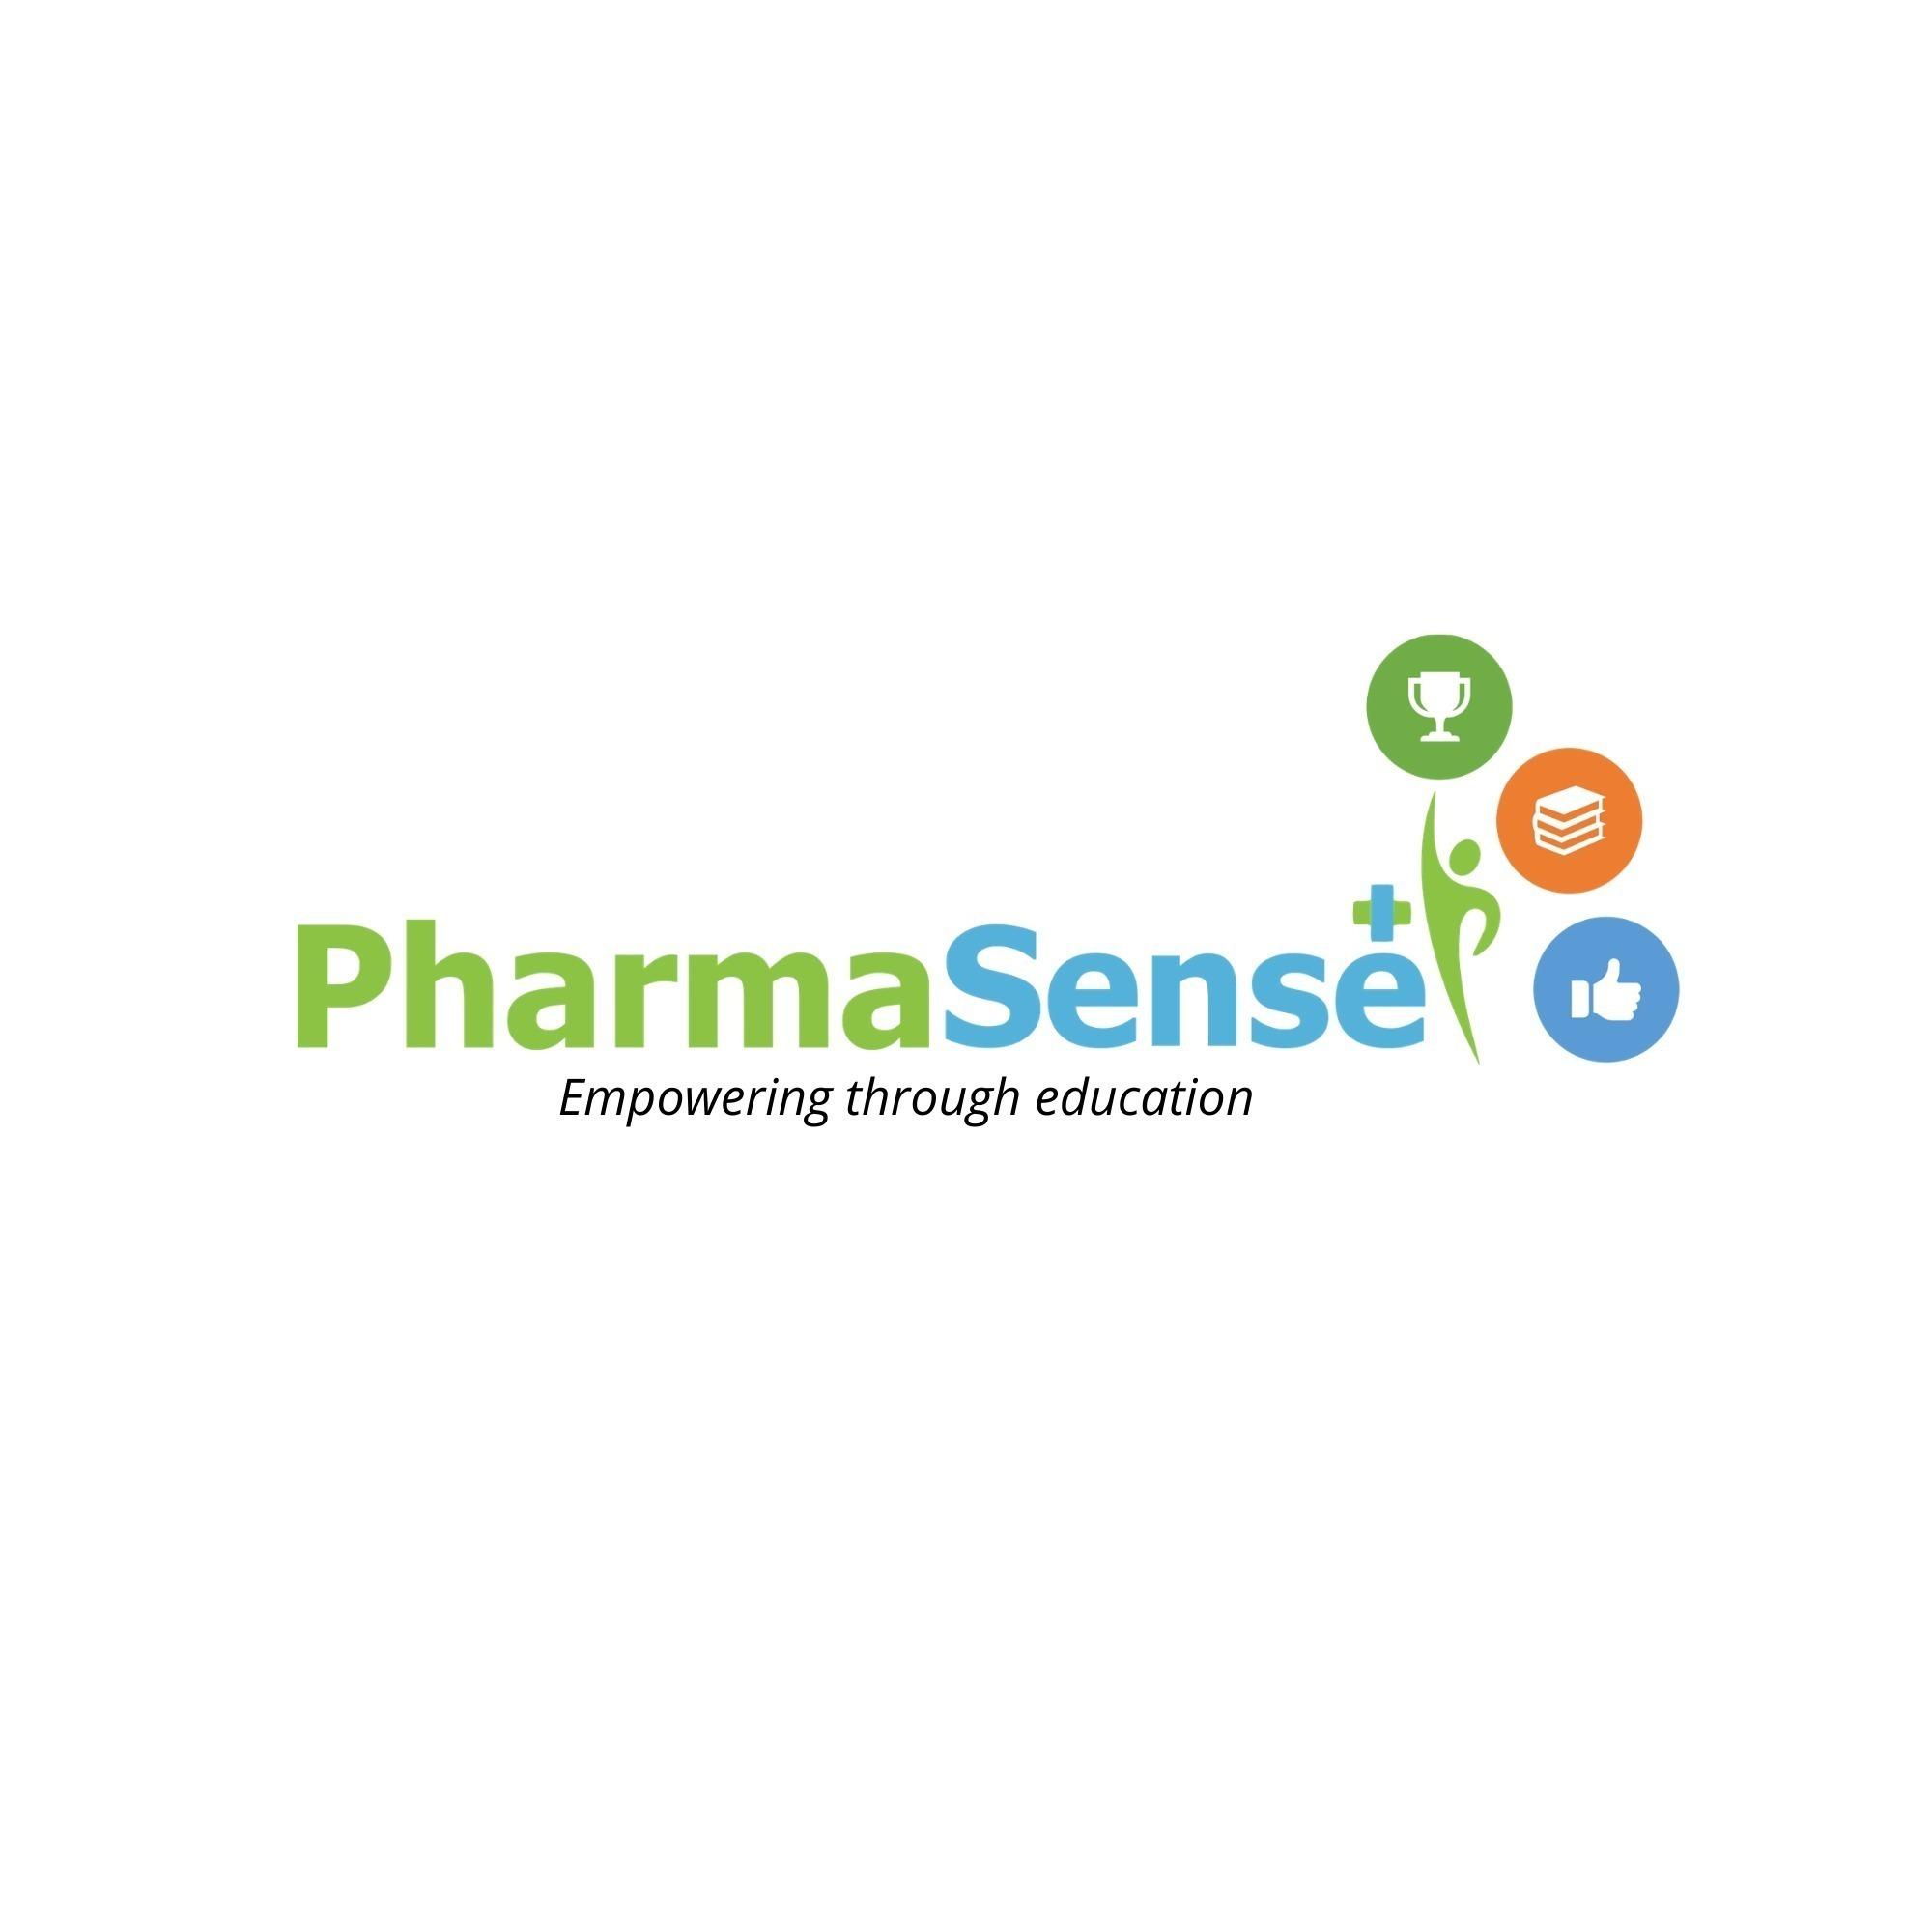 PharmaSense